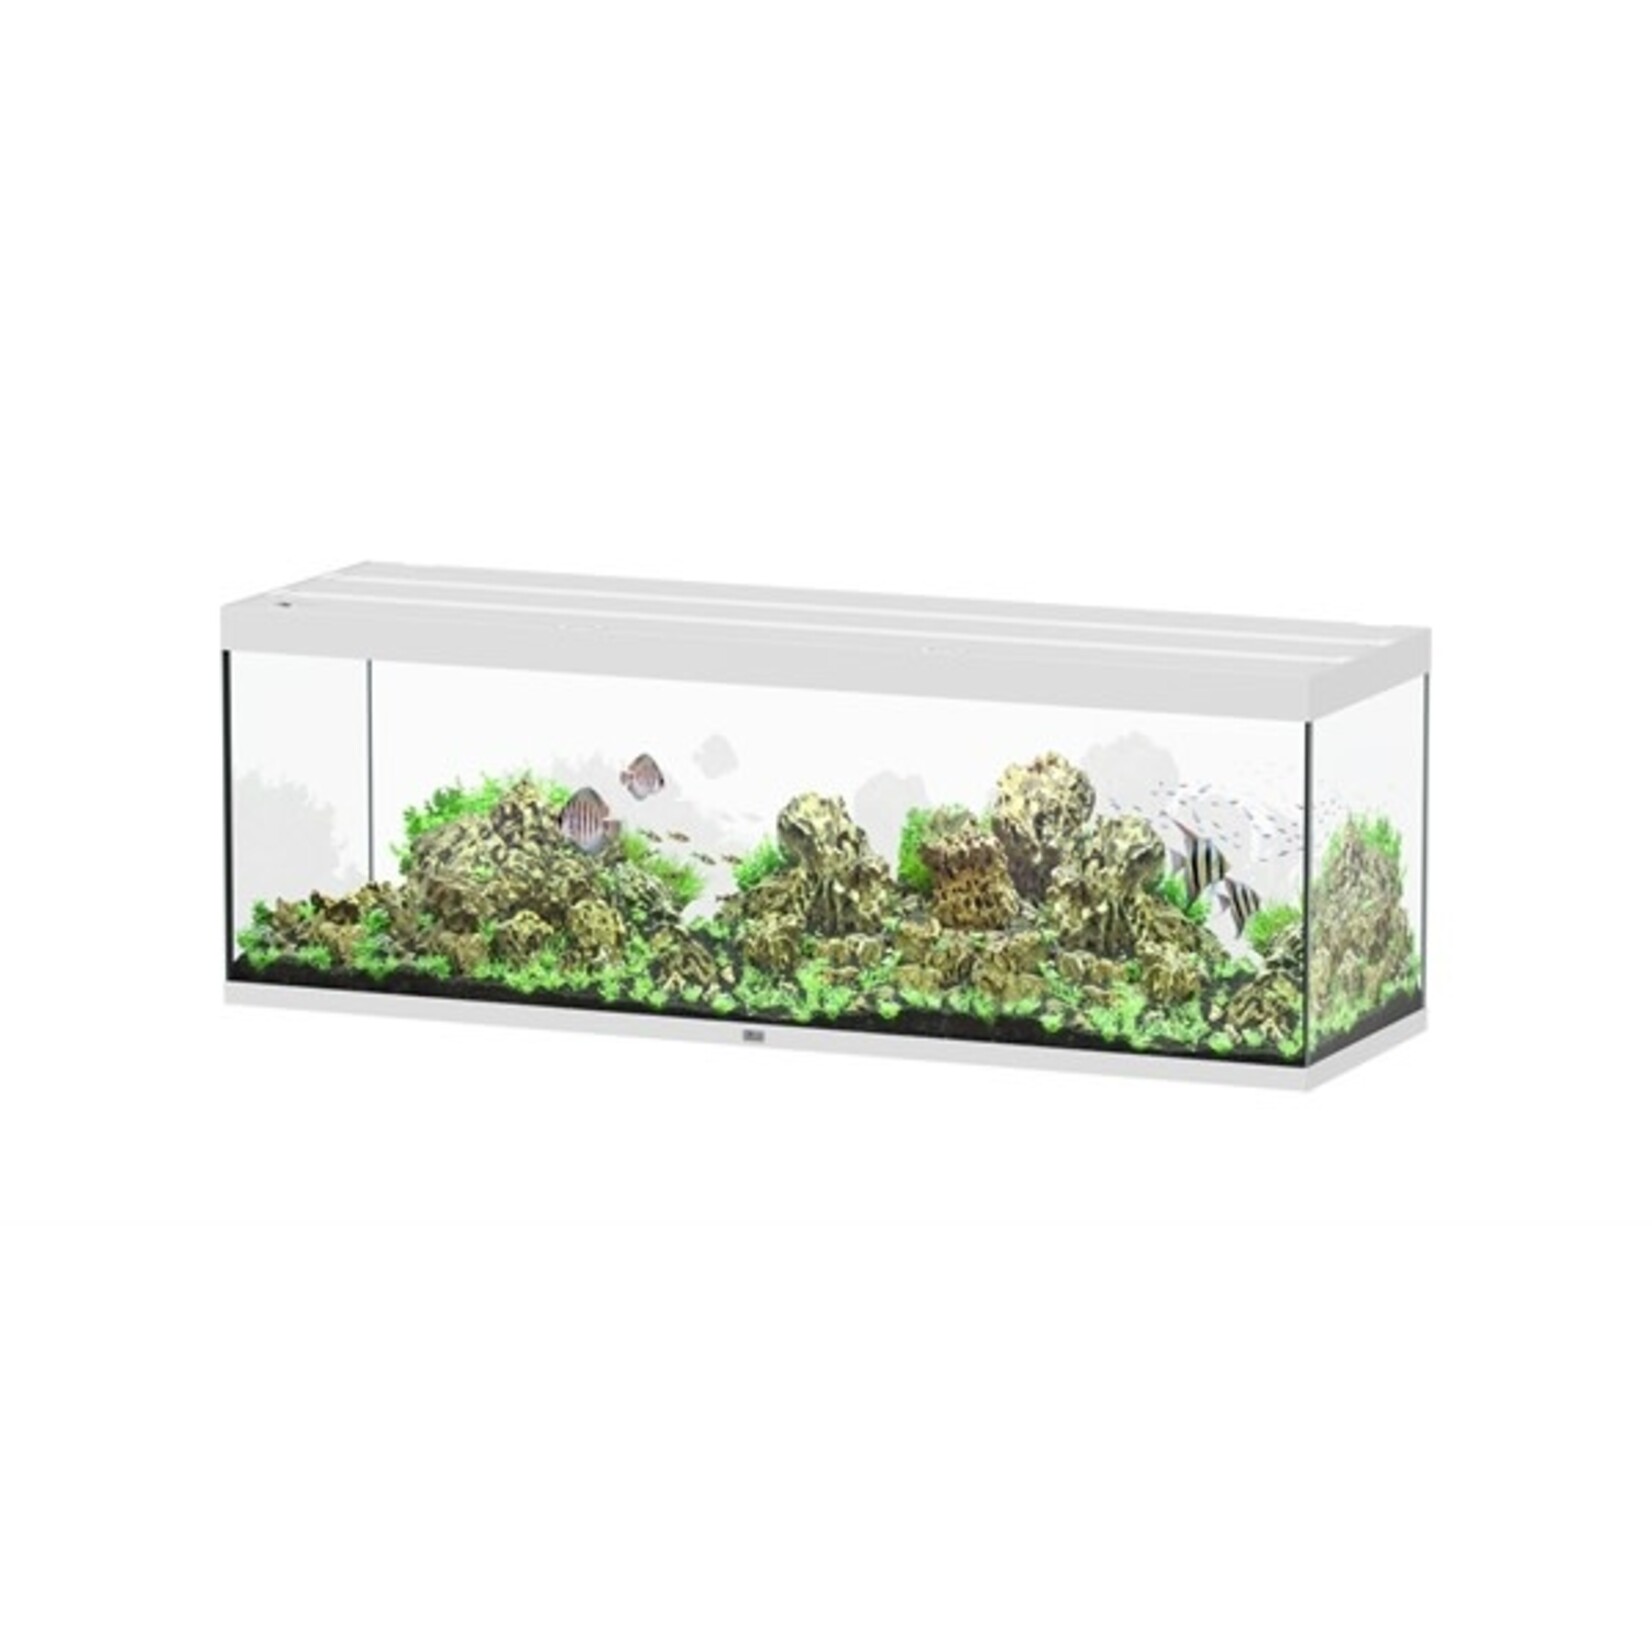 Aquatlantis Aquarium sublime 200x60 cm wit hg-064